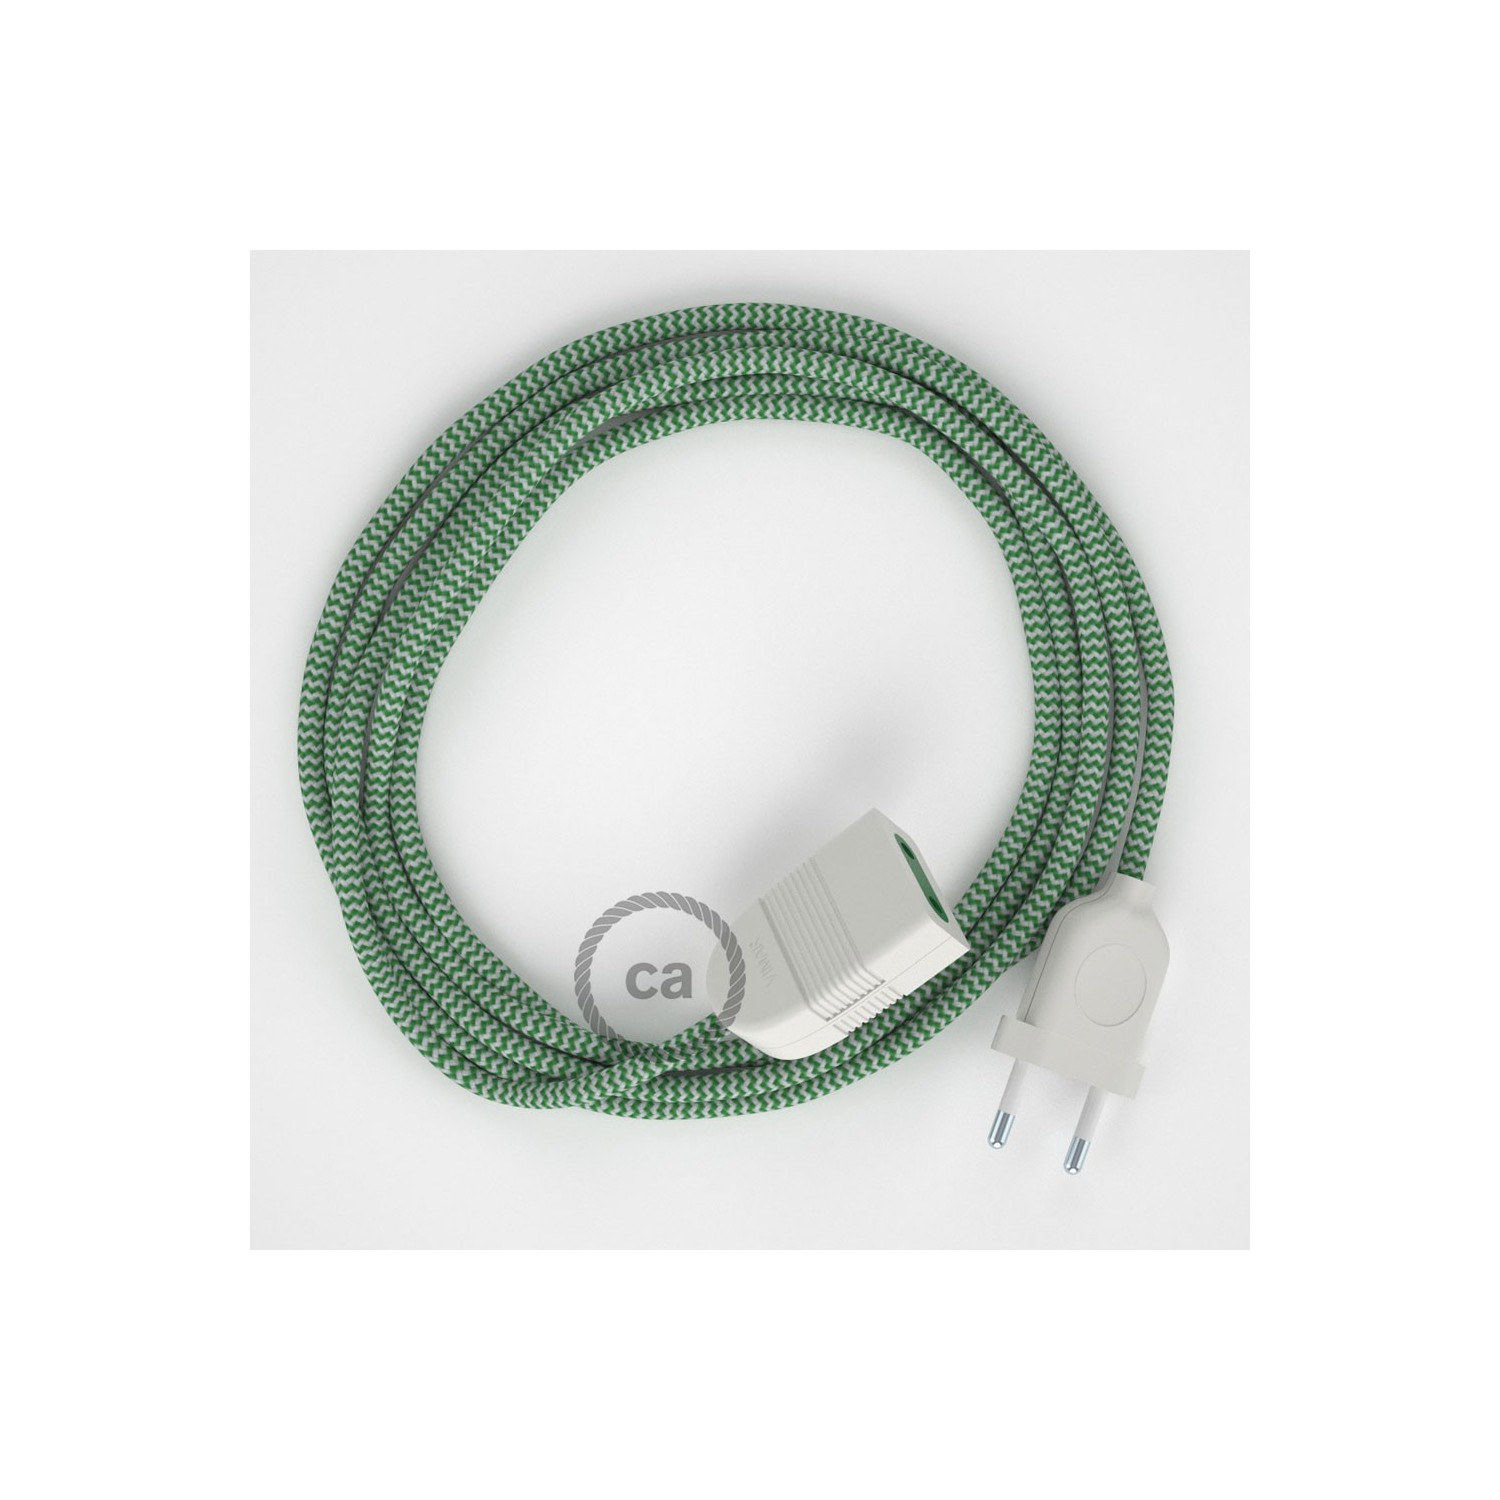 Podaljševalni kabel za napajanje (2P 10A) zigzag zelen rejon RZ06 - Made in Italy